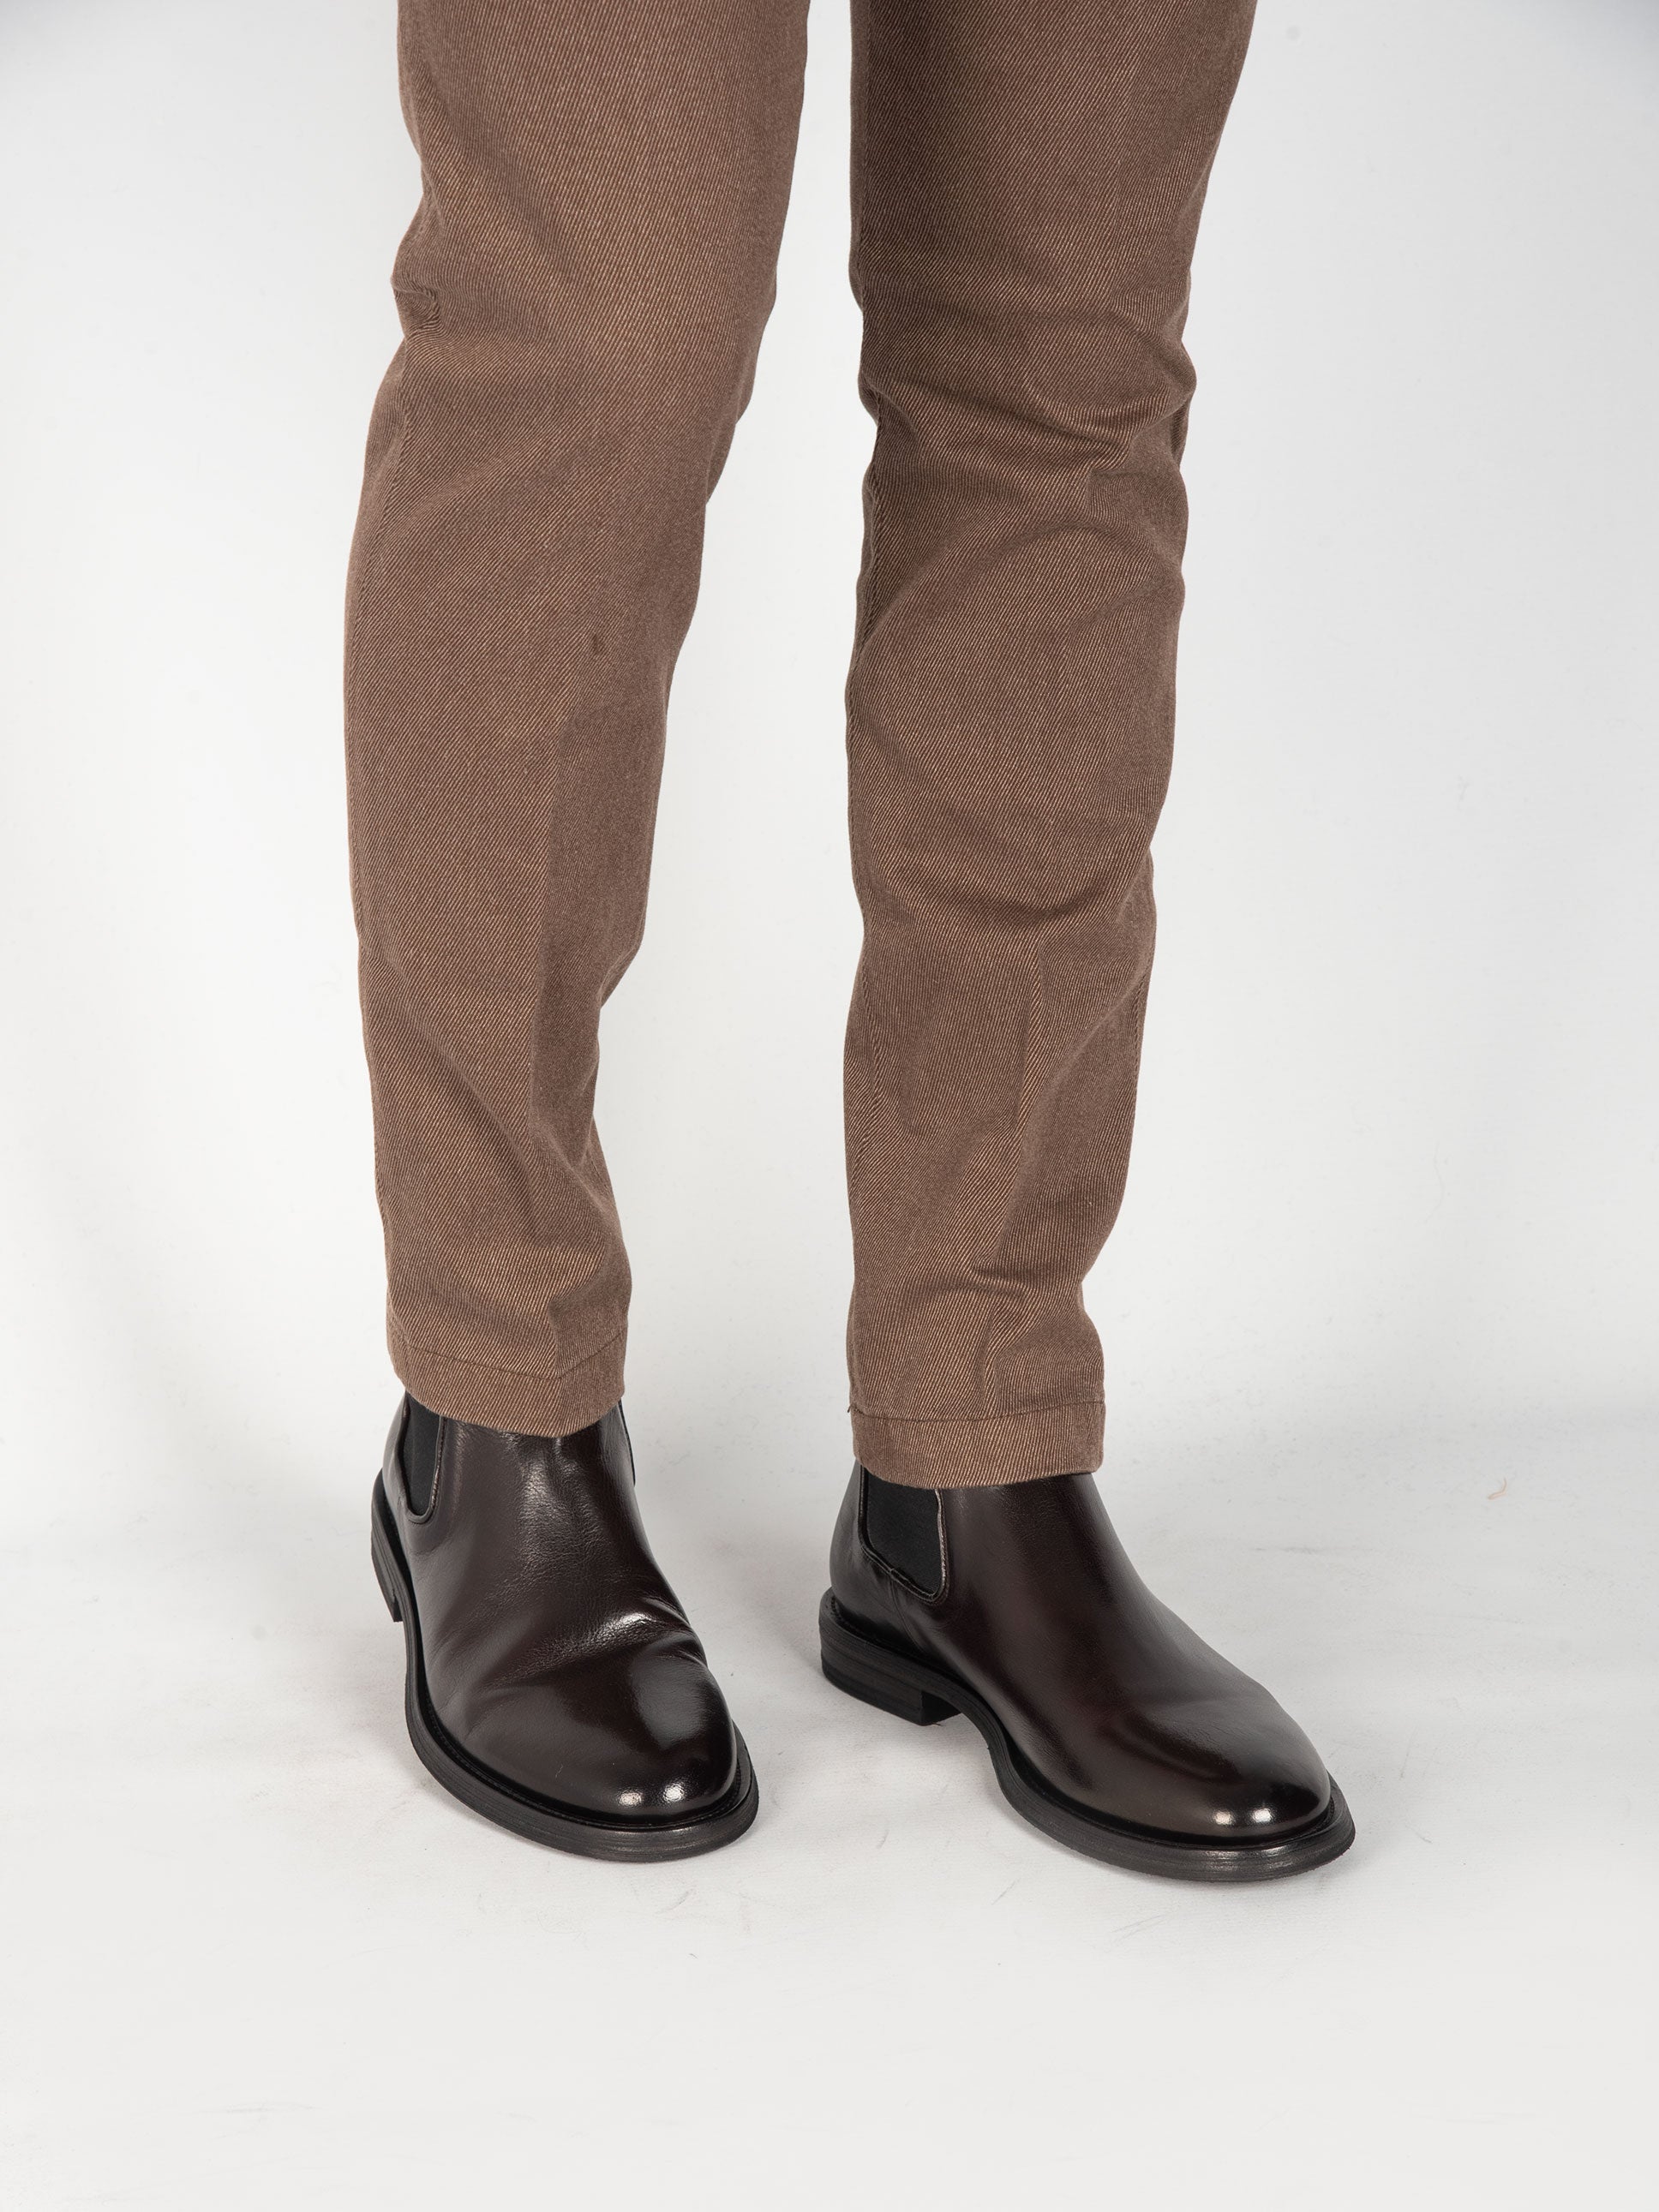 Pantalone Cotone Diagonale - Marrone